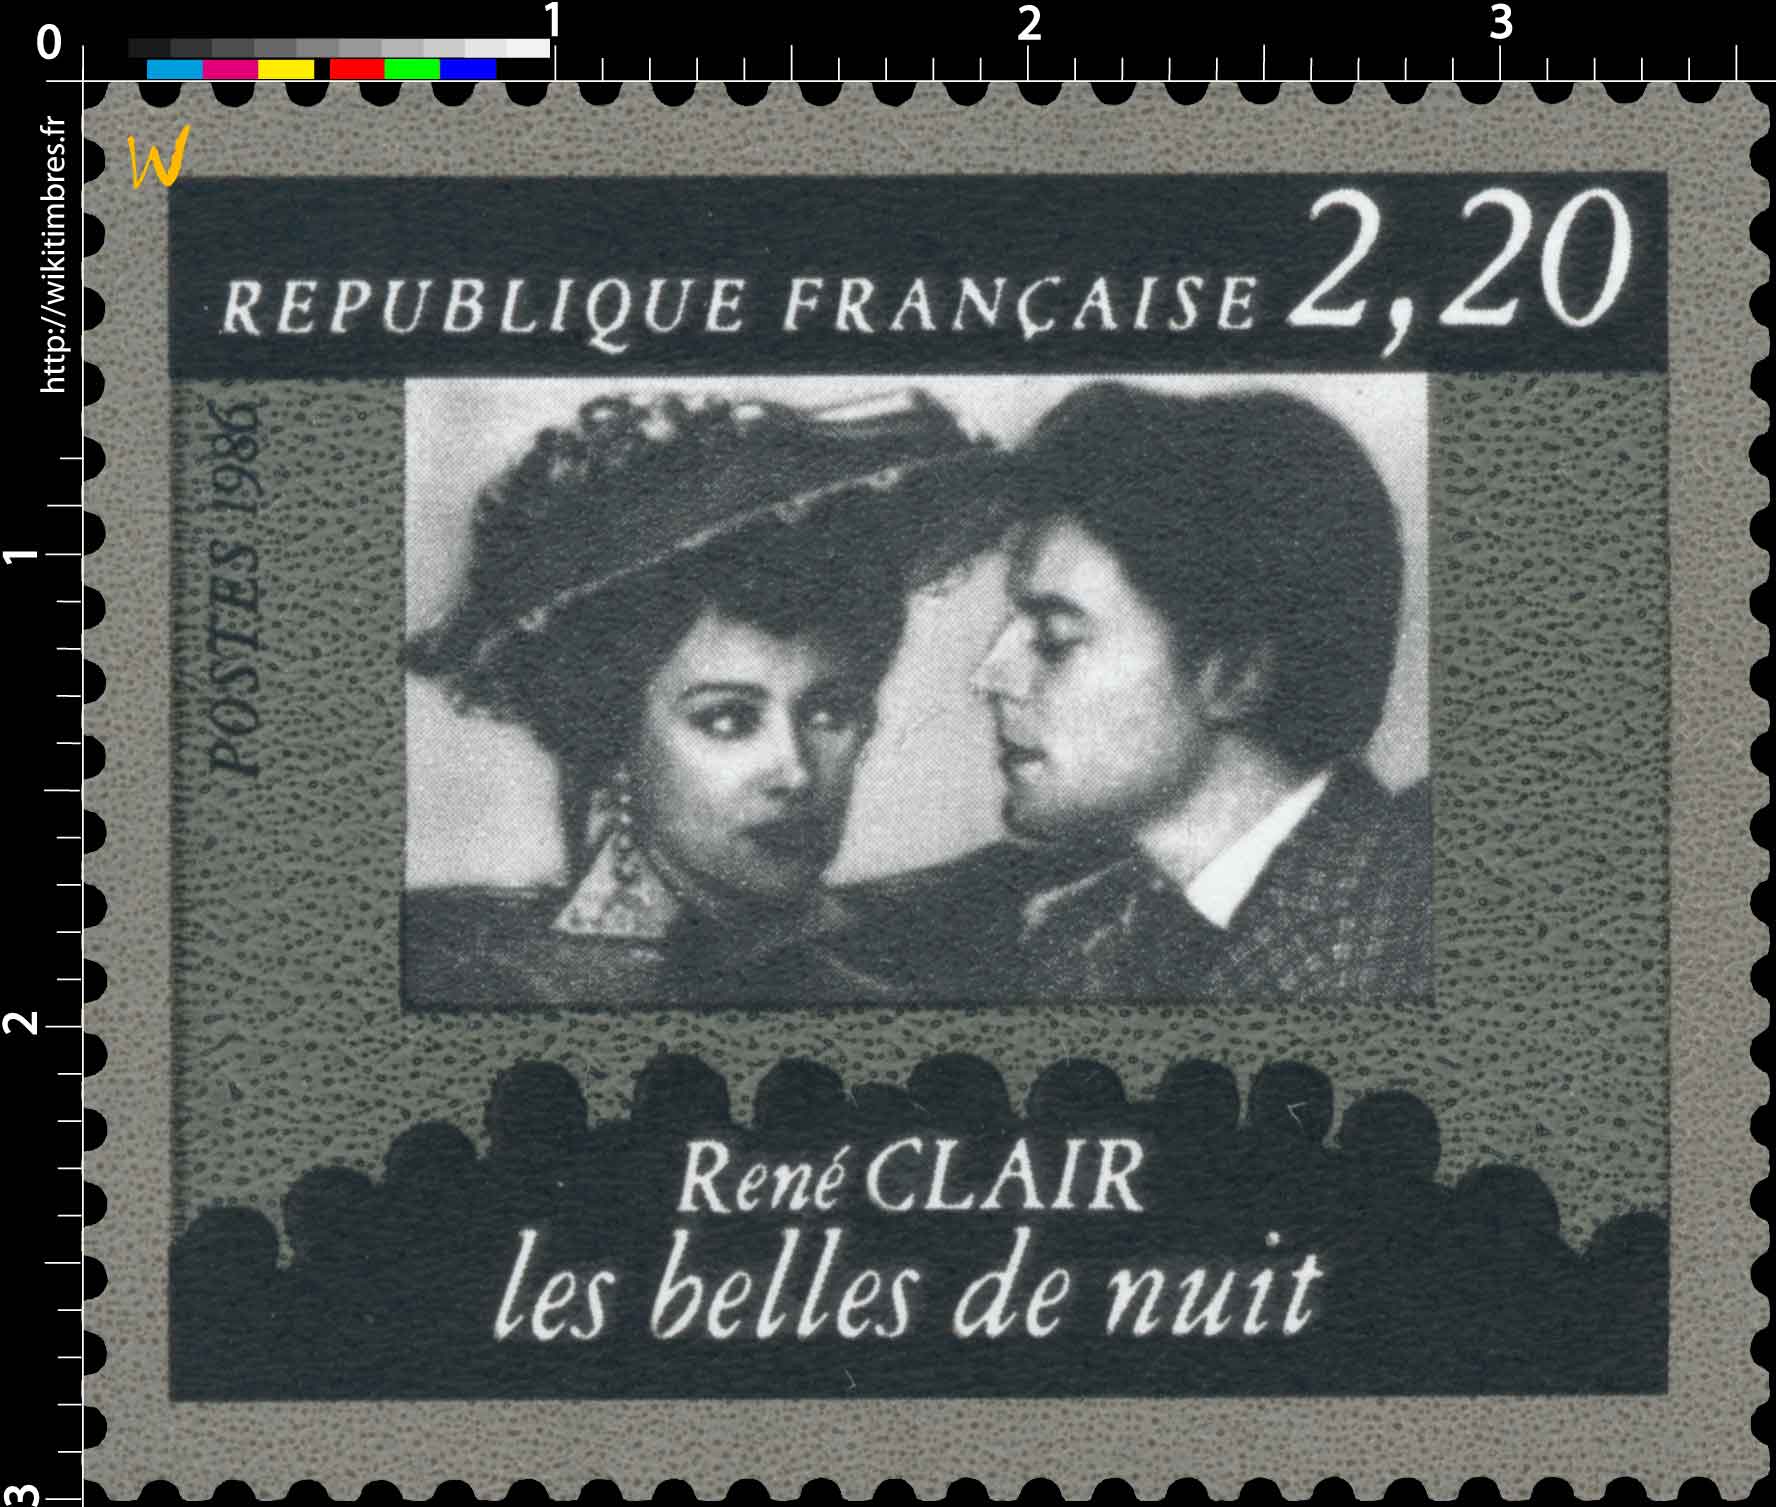 1986 René CLAIR les belles de nuit